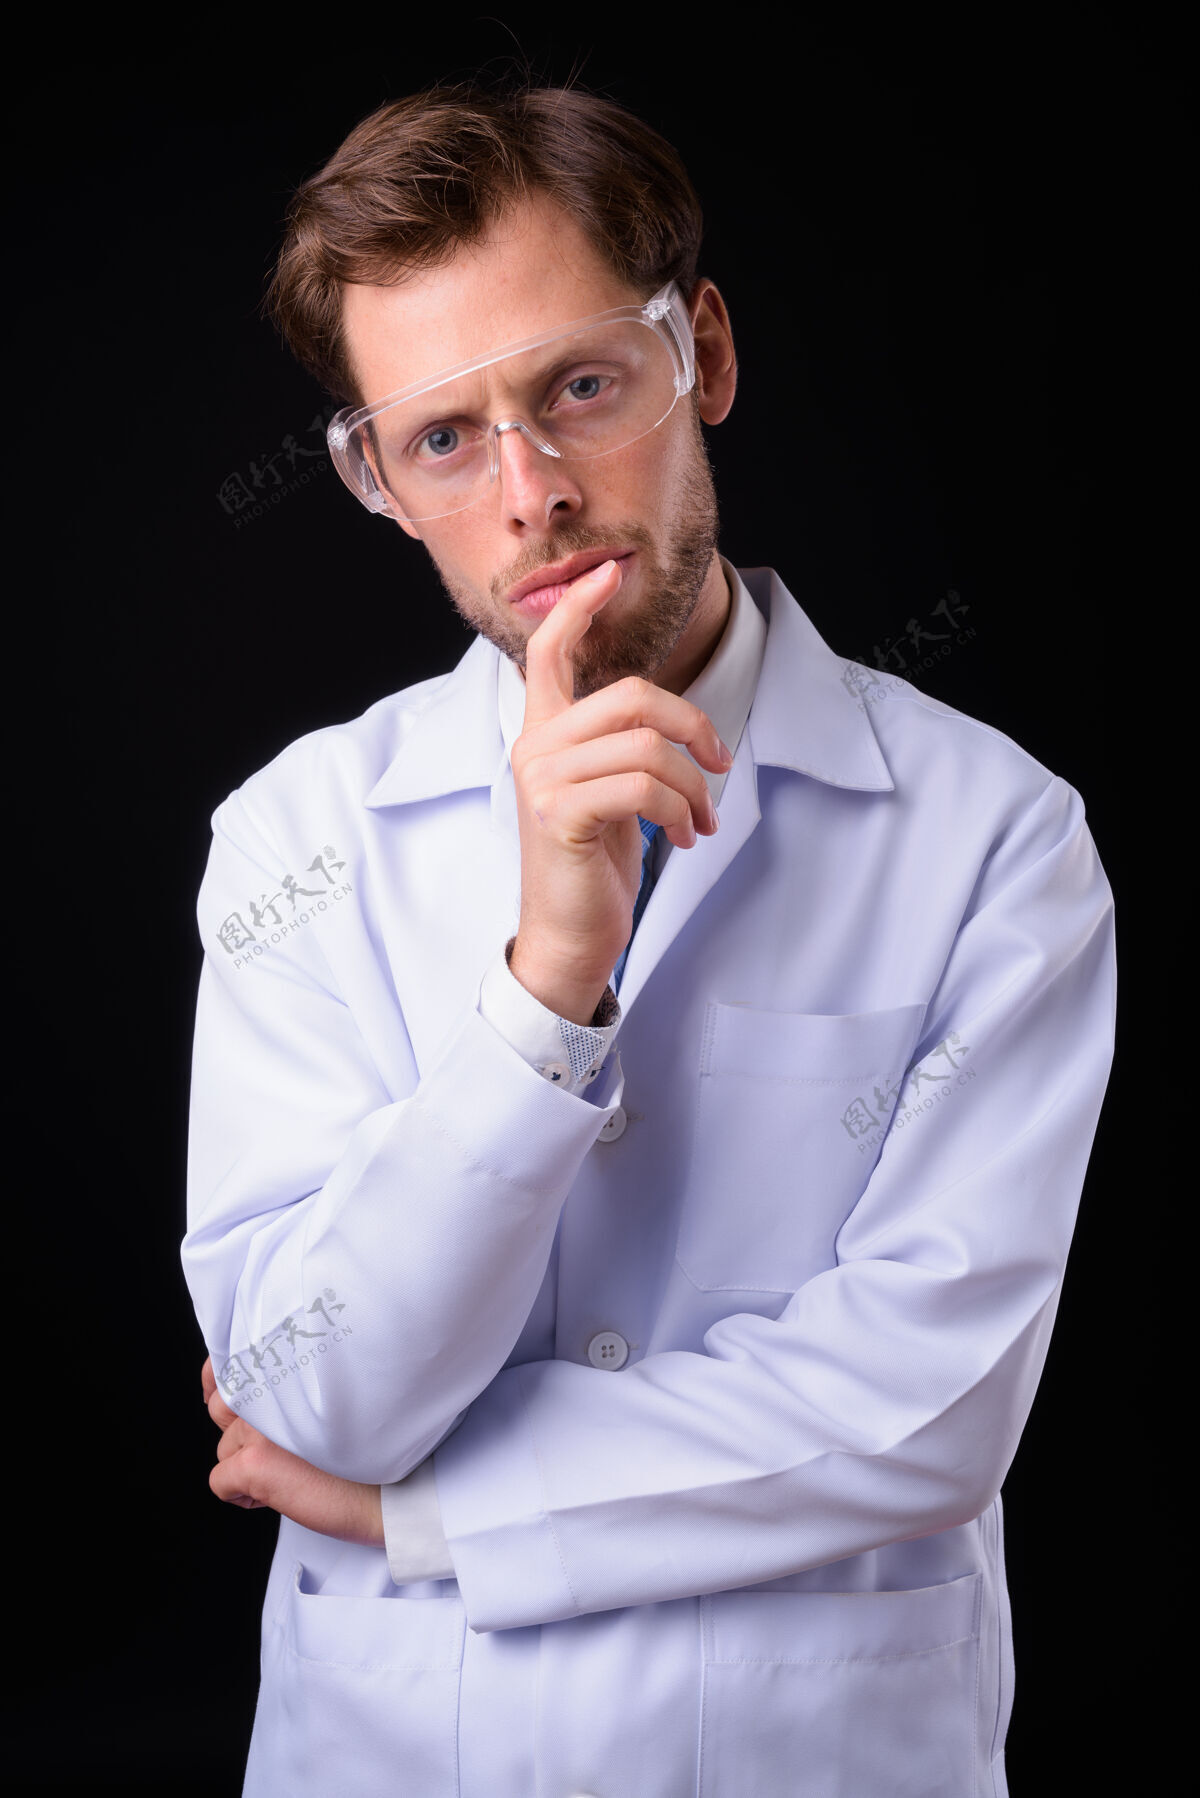 法国人大胡子帅哥医生当科学家戴防护眼镜防黑空间护理30岁保护